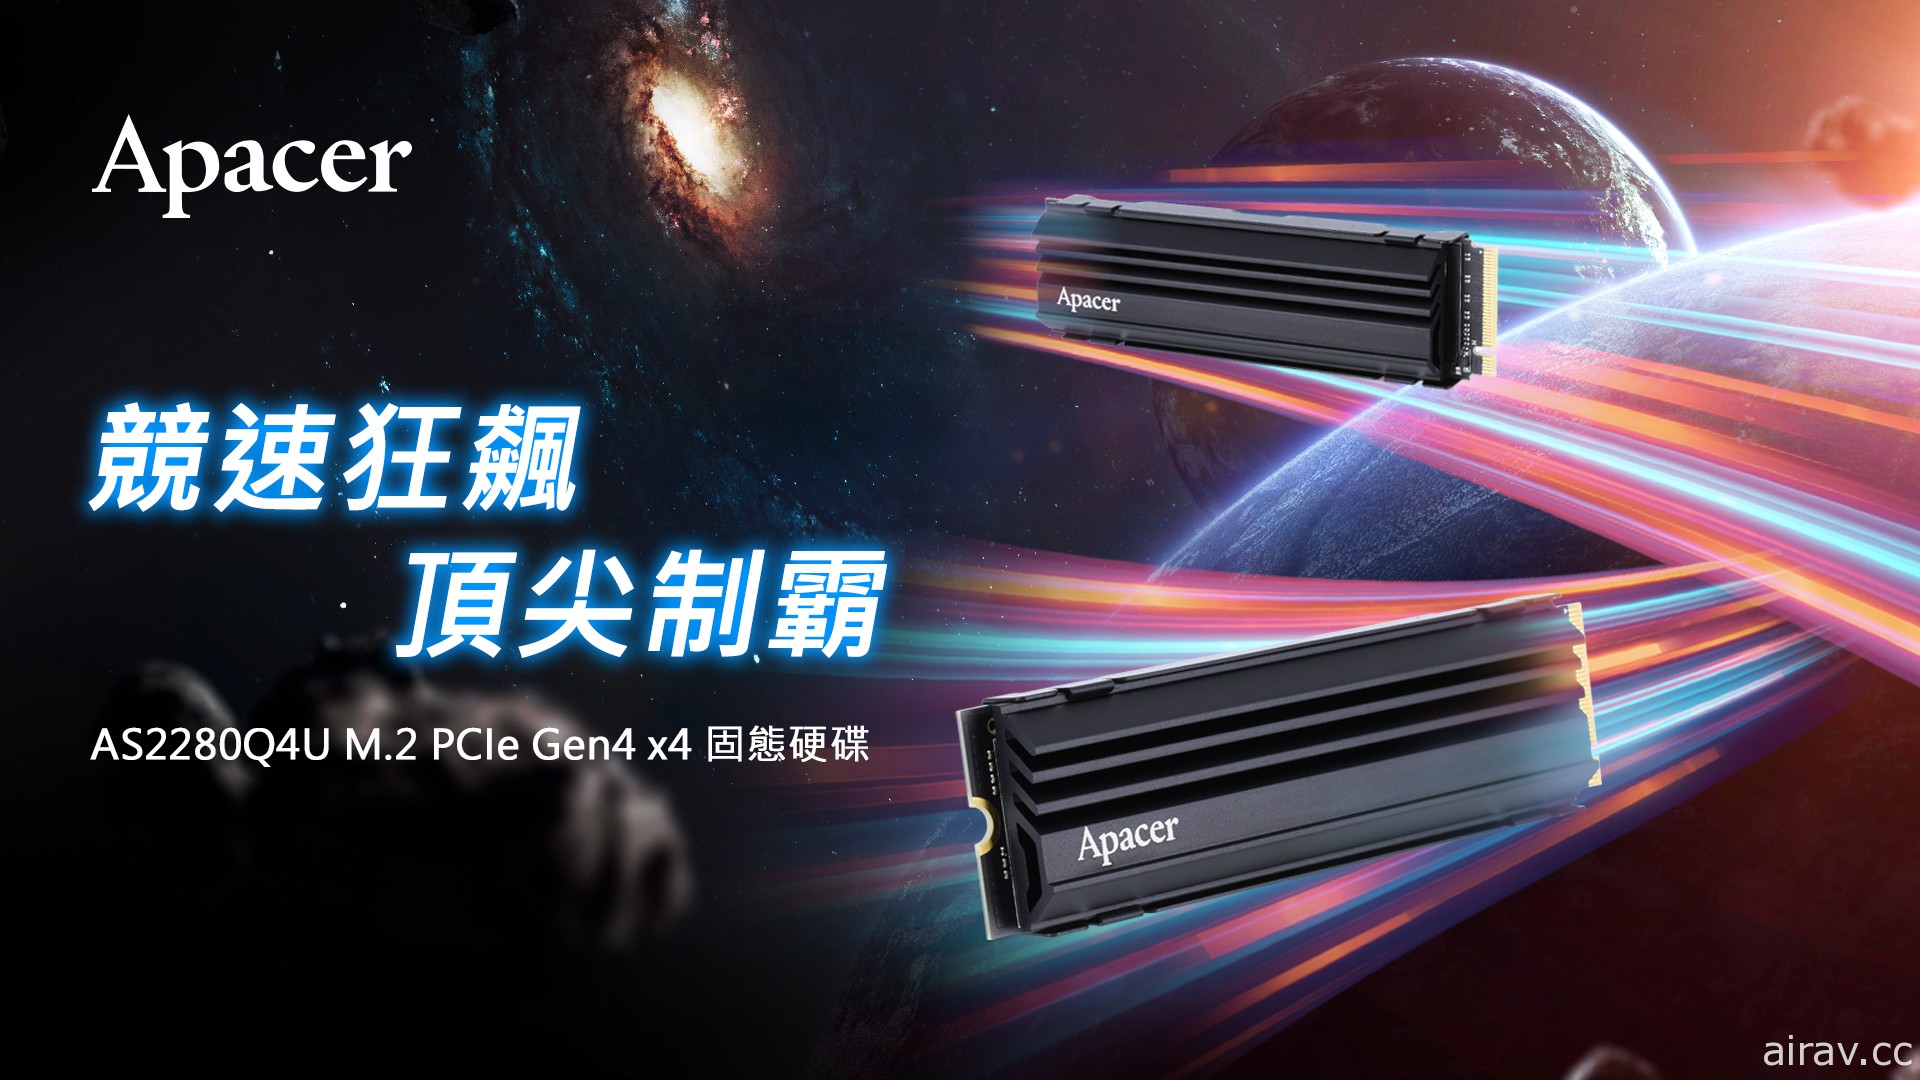 宇瞻科技宣布推出 AS2280Q4U M.2 PCIe Gen4 极速固态硬盘 支援 PS5 扩充用途